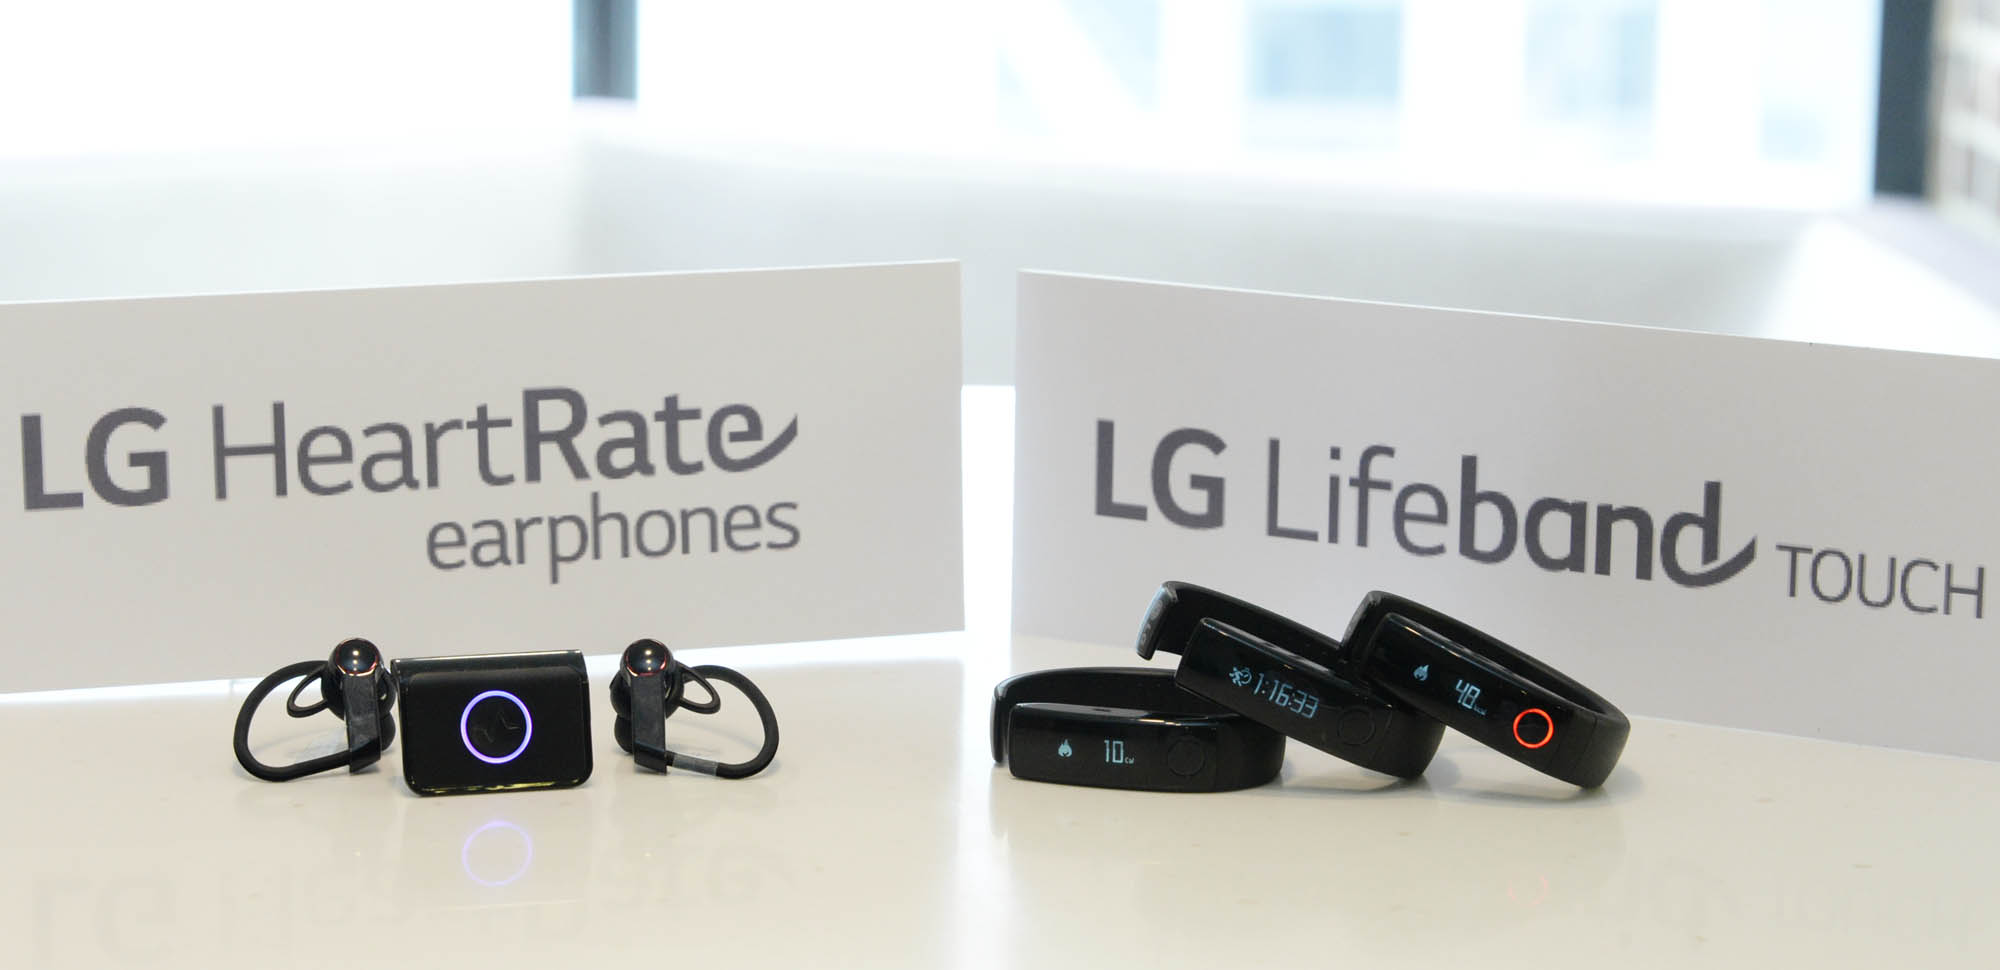 Η LG λανσάρει τα πρώτα γκάτζετ υγείας και ευεξίας για iPhone και Android